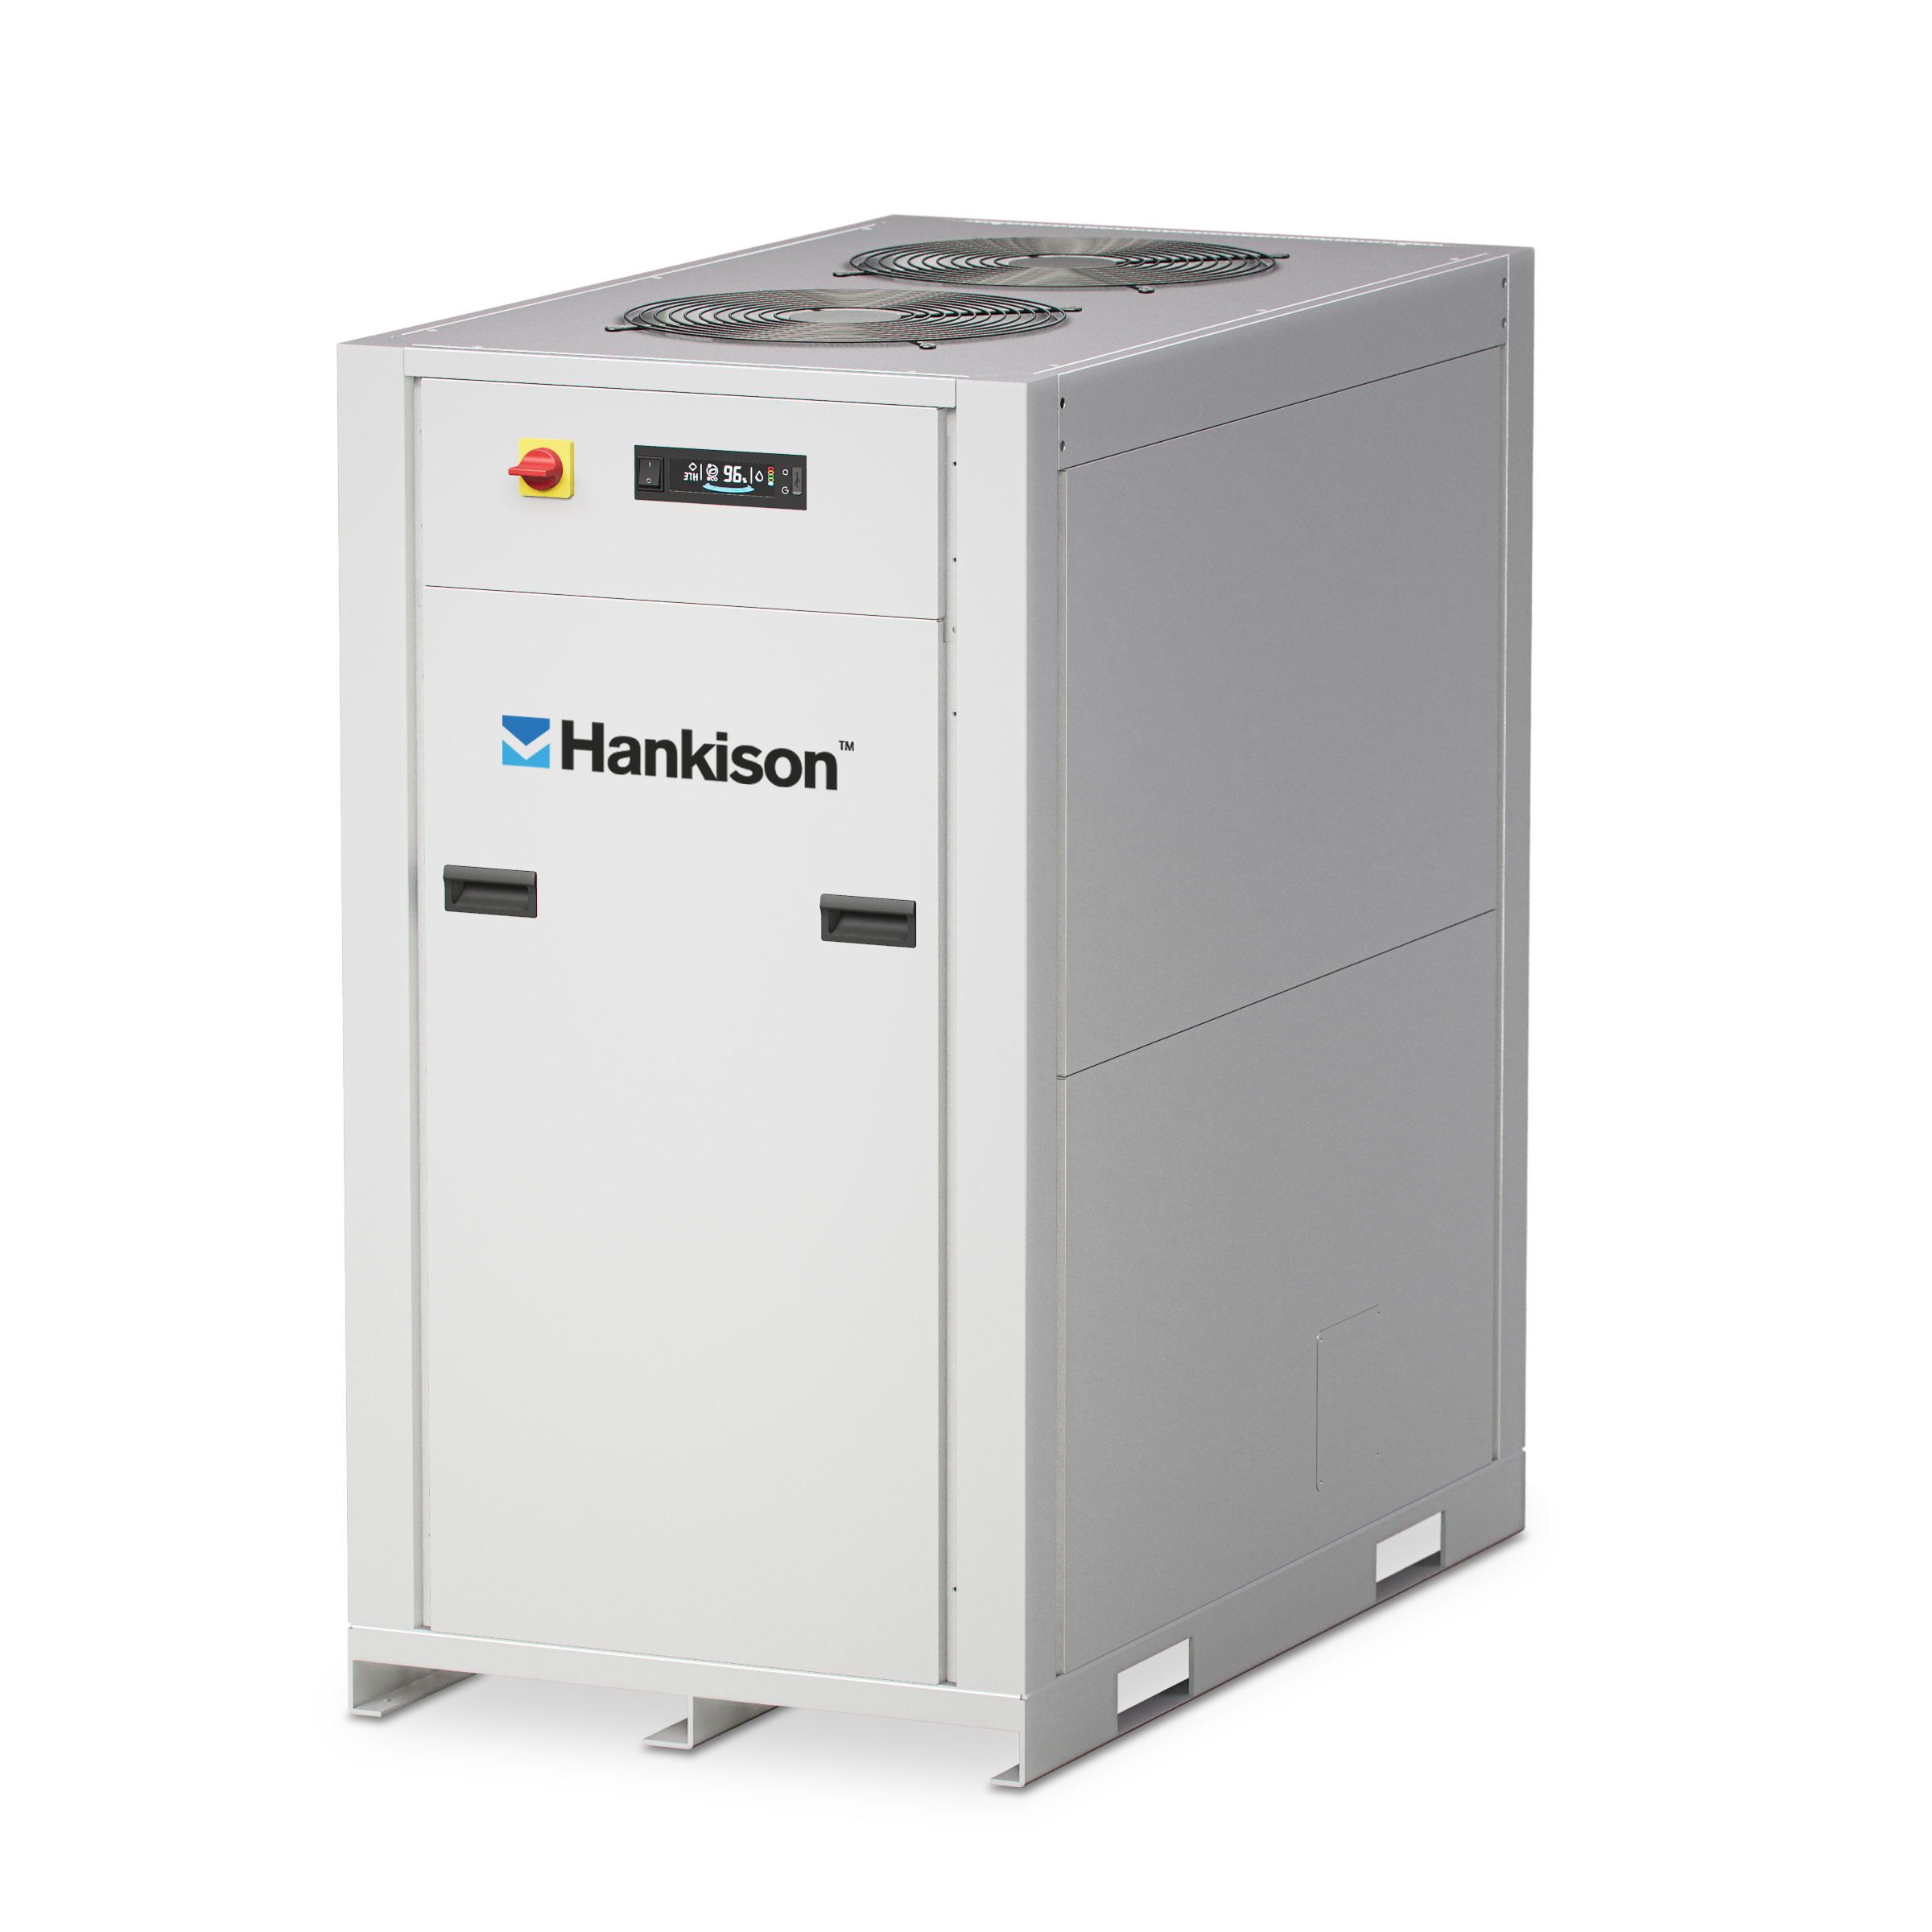 Hankison FLEX refrigerated compressed air dryer 8 